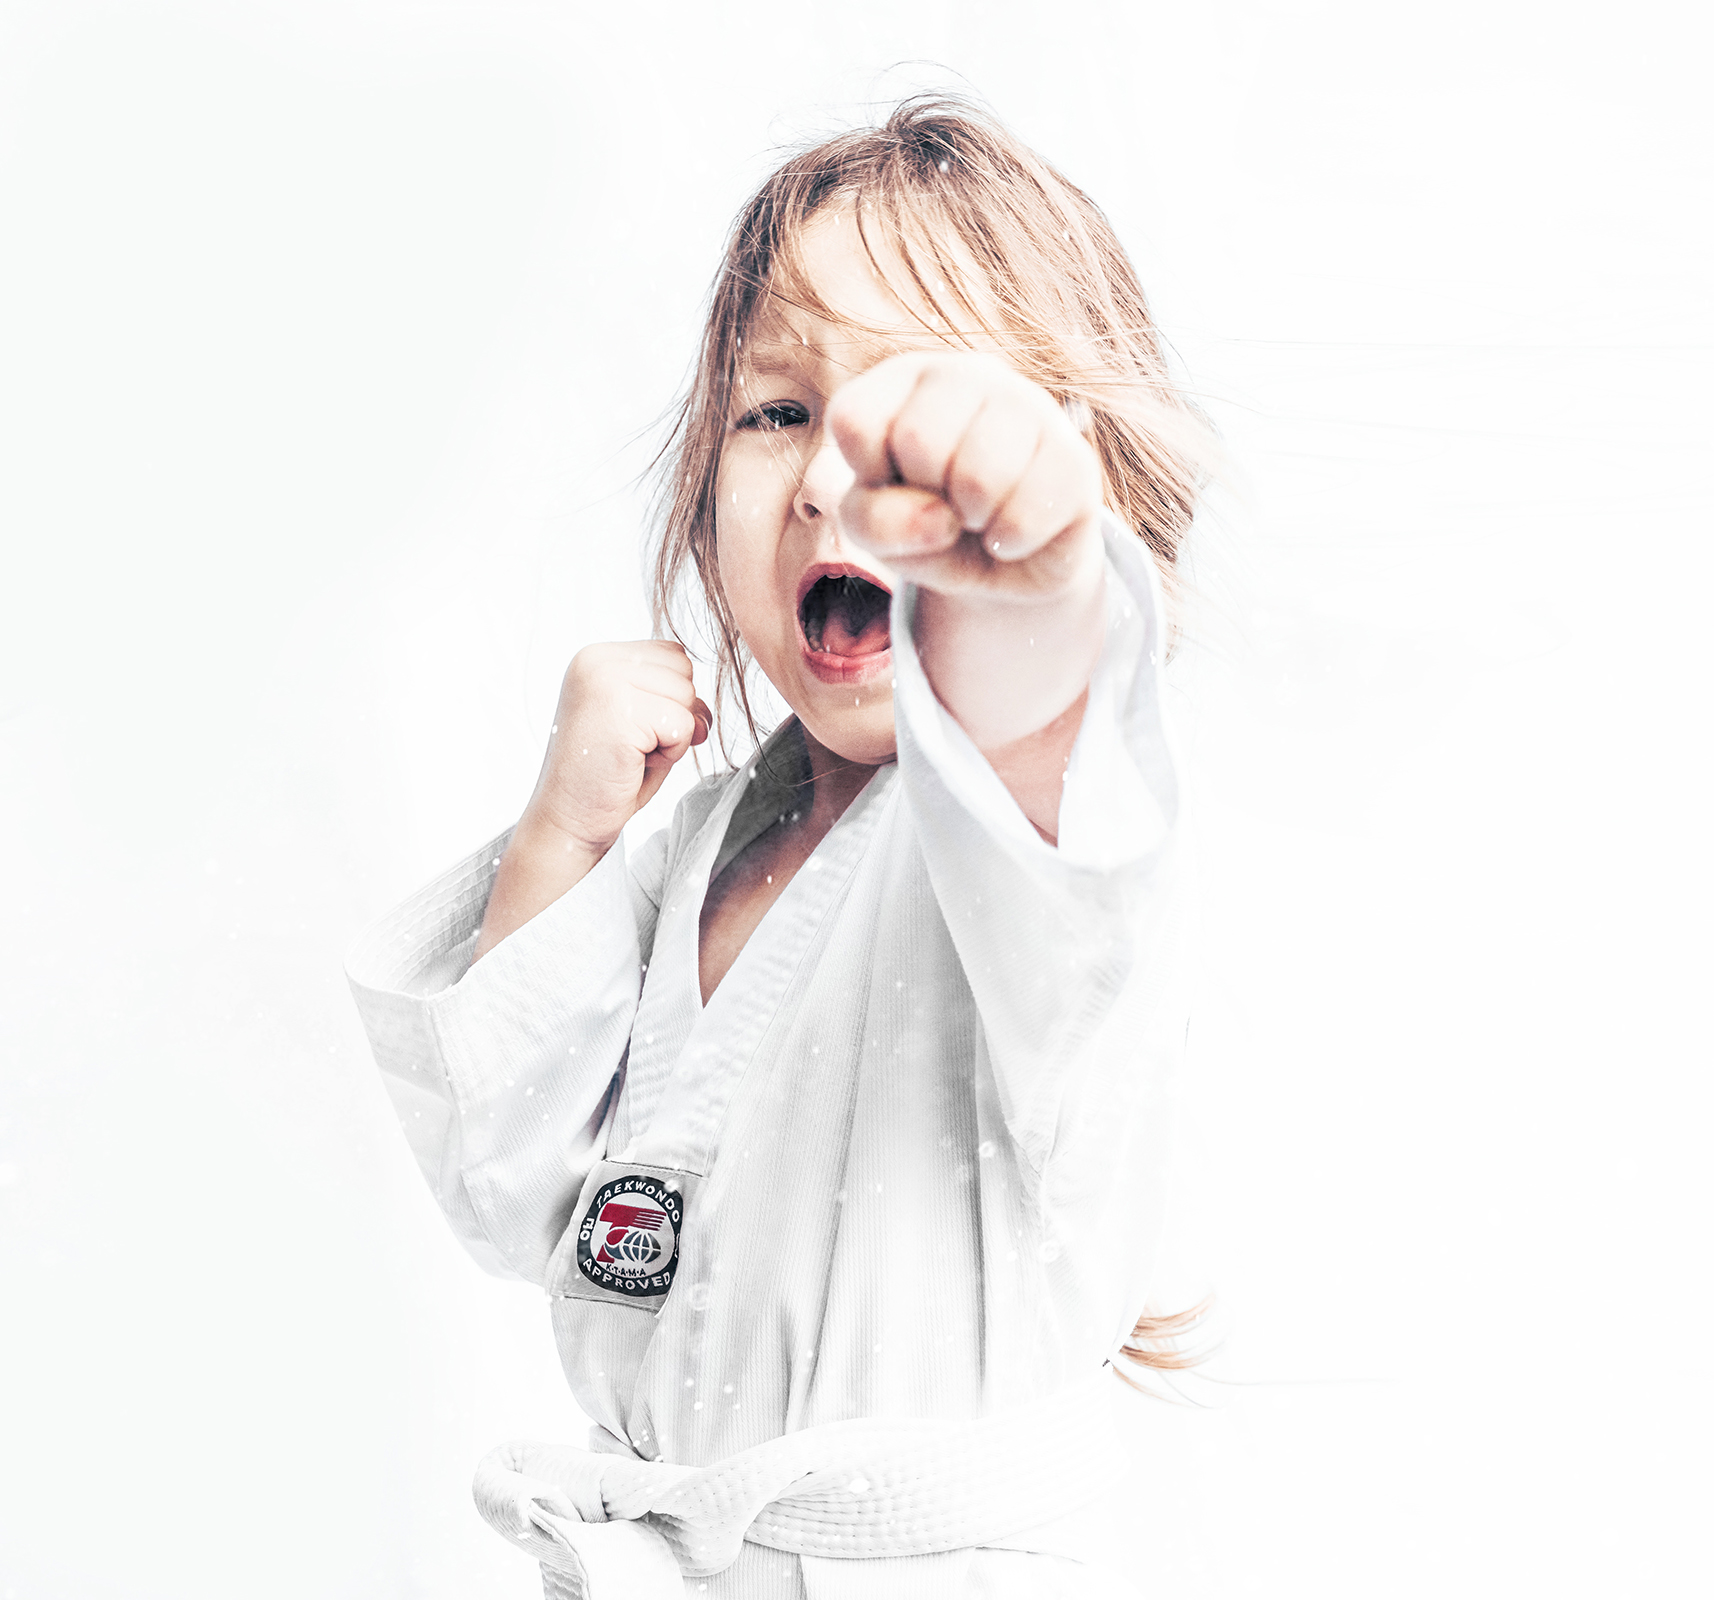 Taekwondo portrait